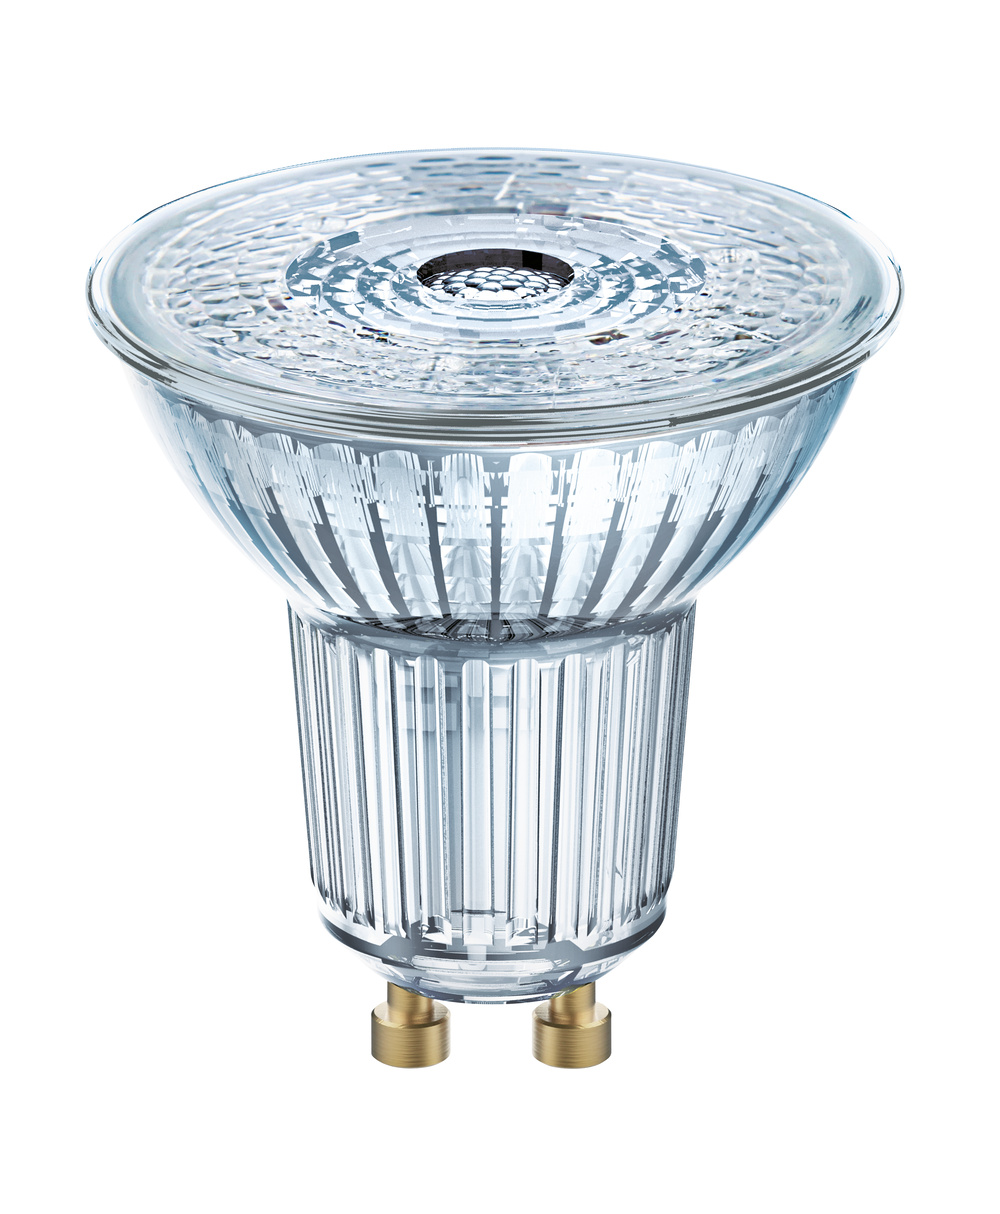 Ledvance LED lamp LED PAR16 P 4.3W 827 GU10 – 4099854045660 – replacement for 50 W - 4099854045660